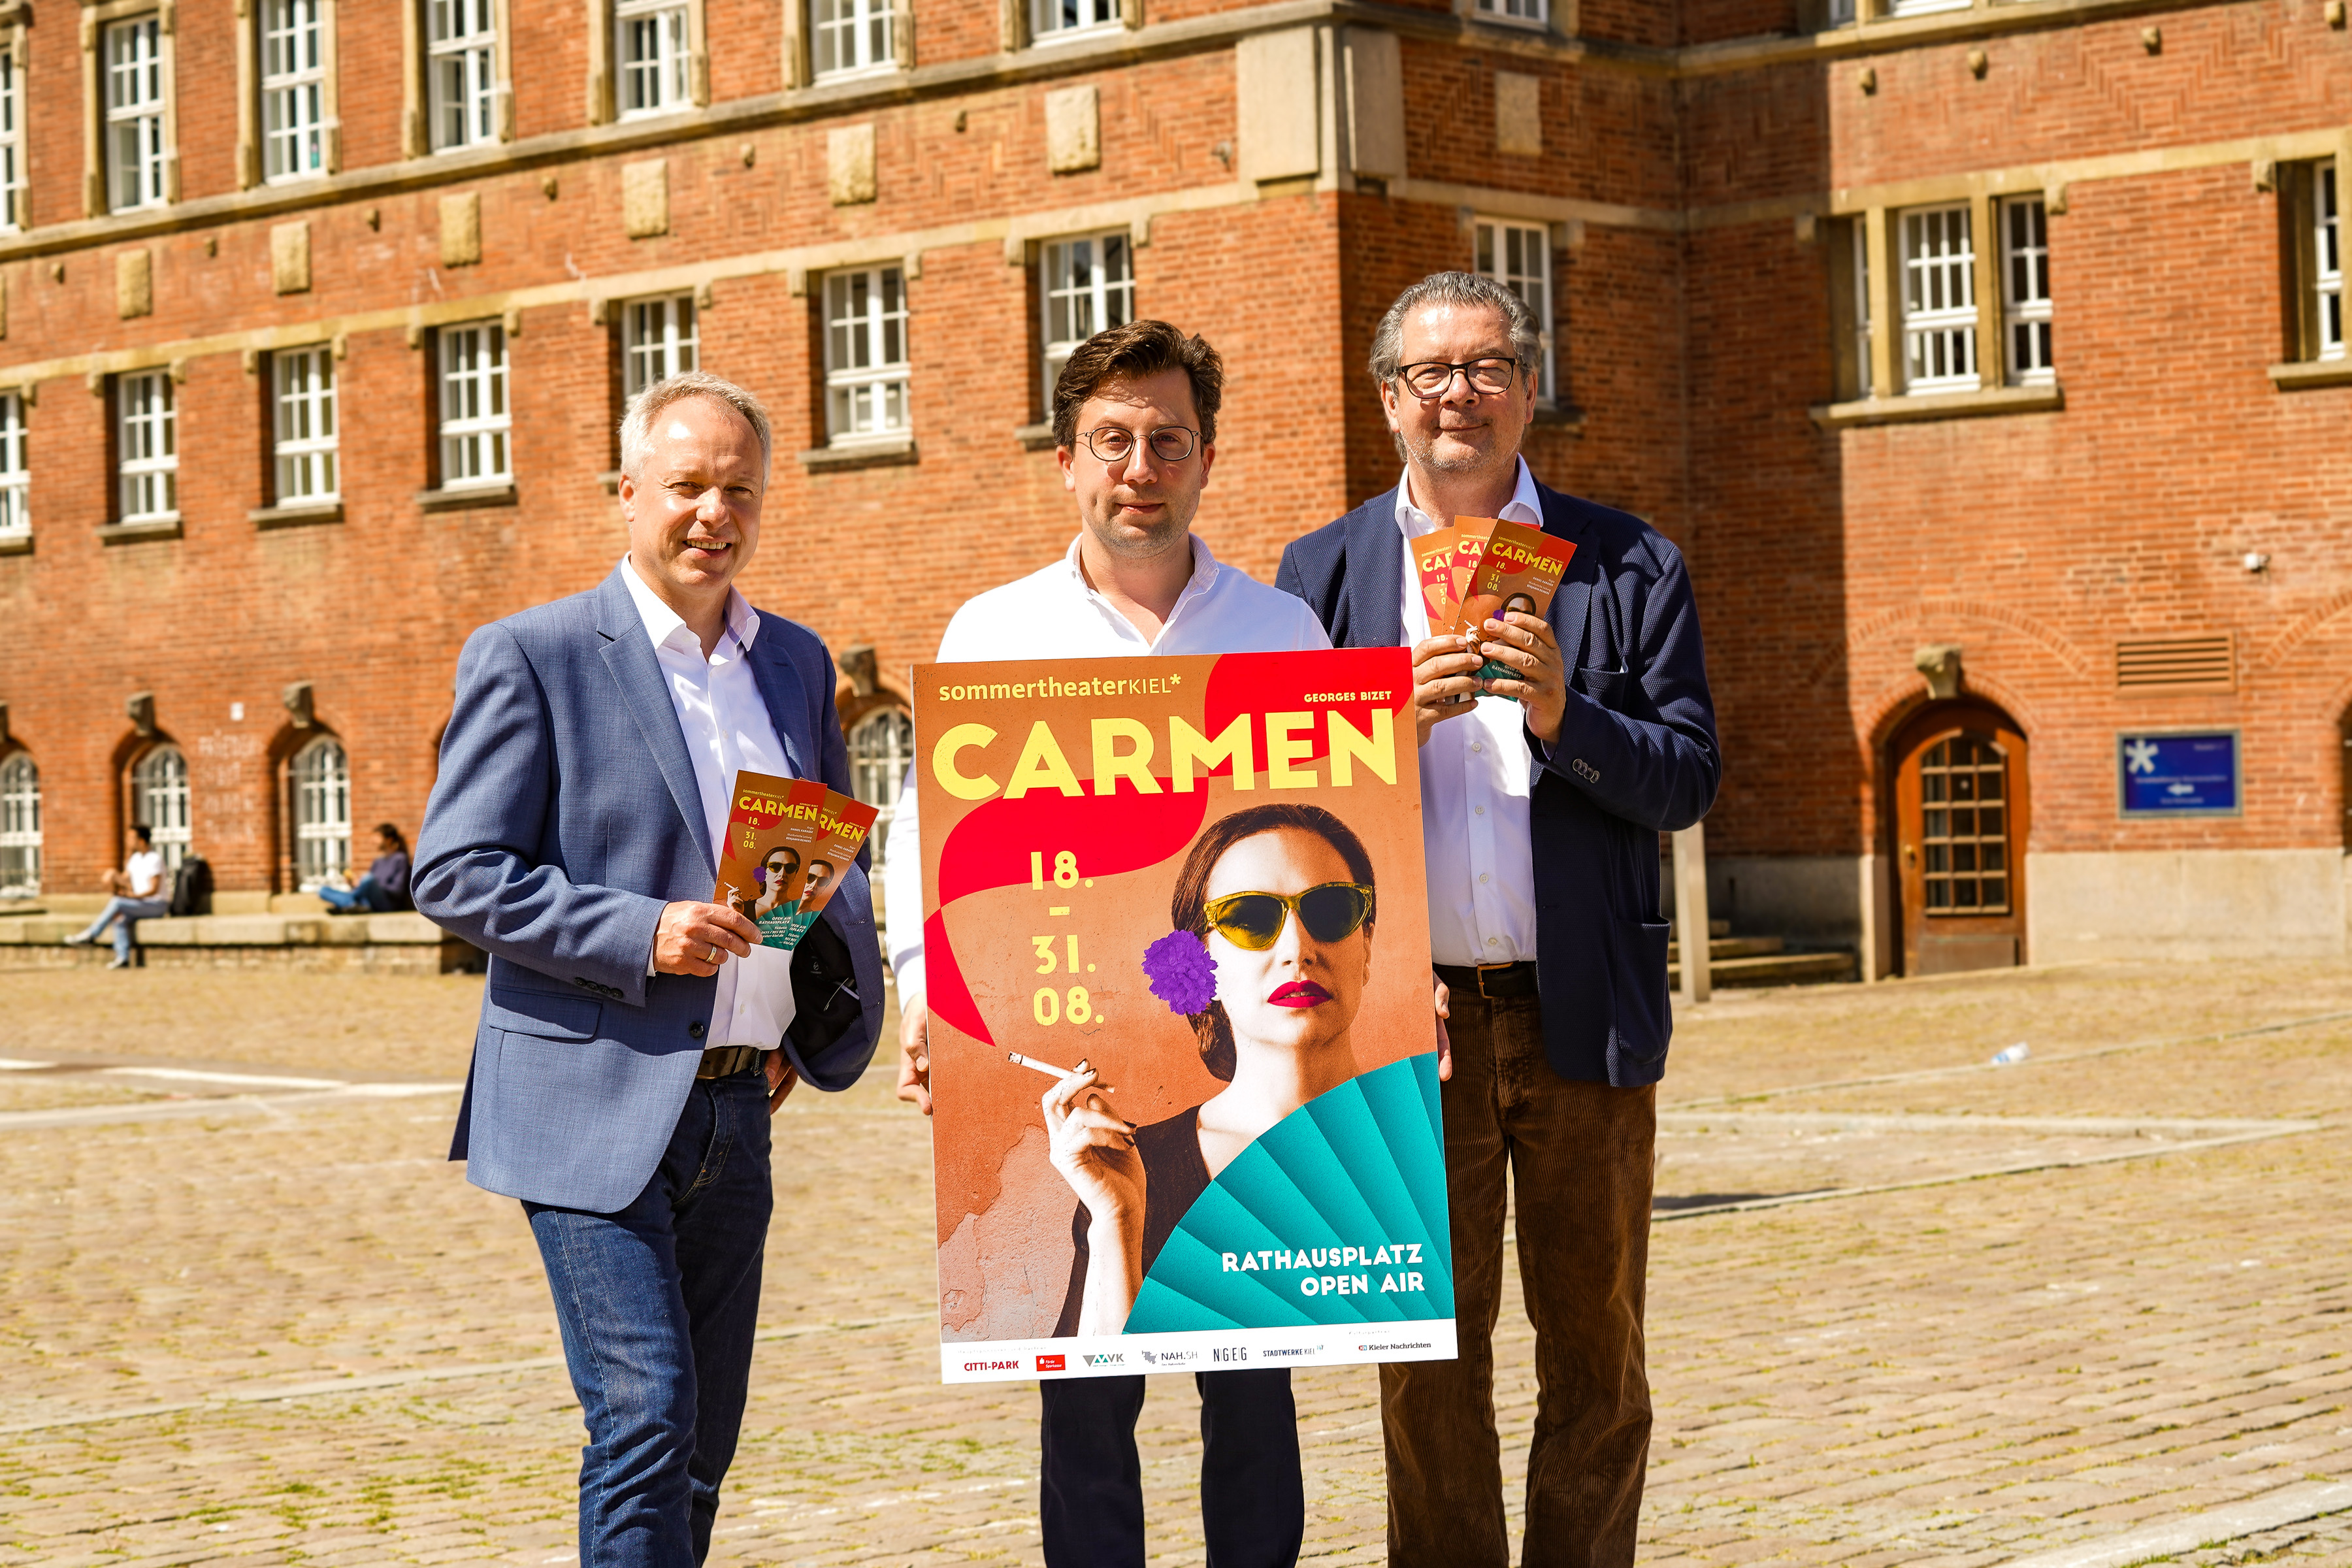 Roland Schneider, Benjamin Reiners und Daniel Karasek mit dem Carmen-Plakat auf dem Rathausplatz